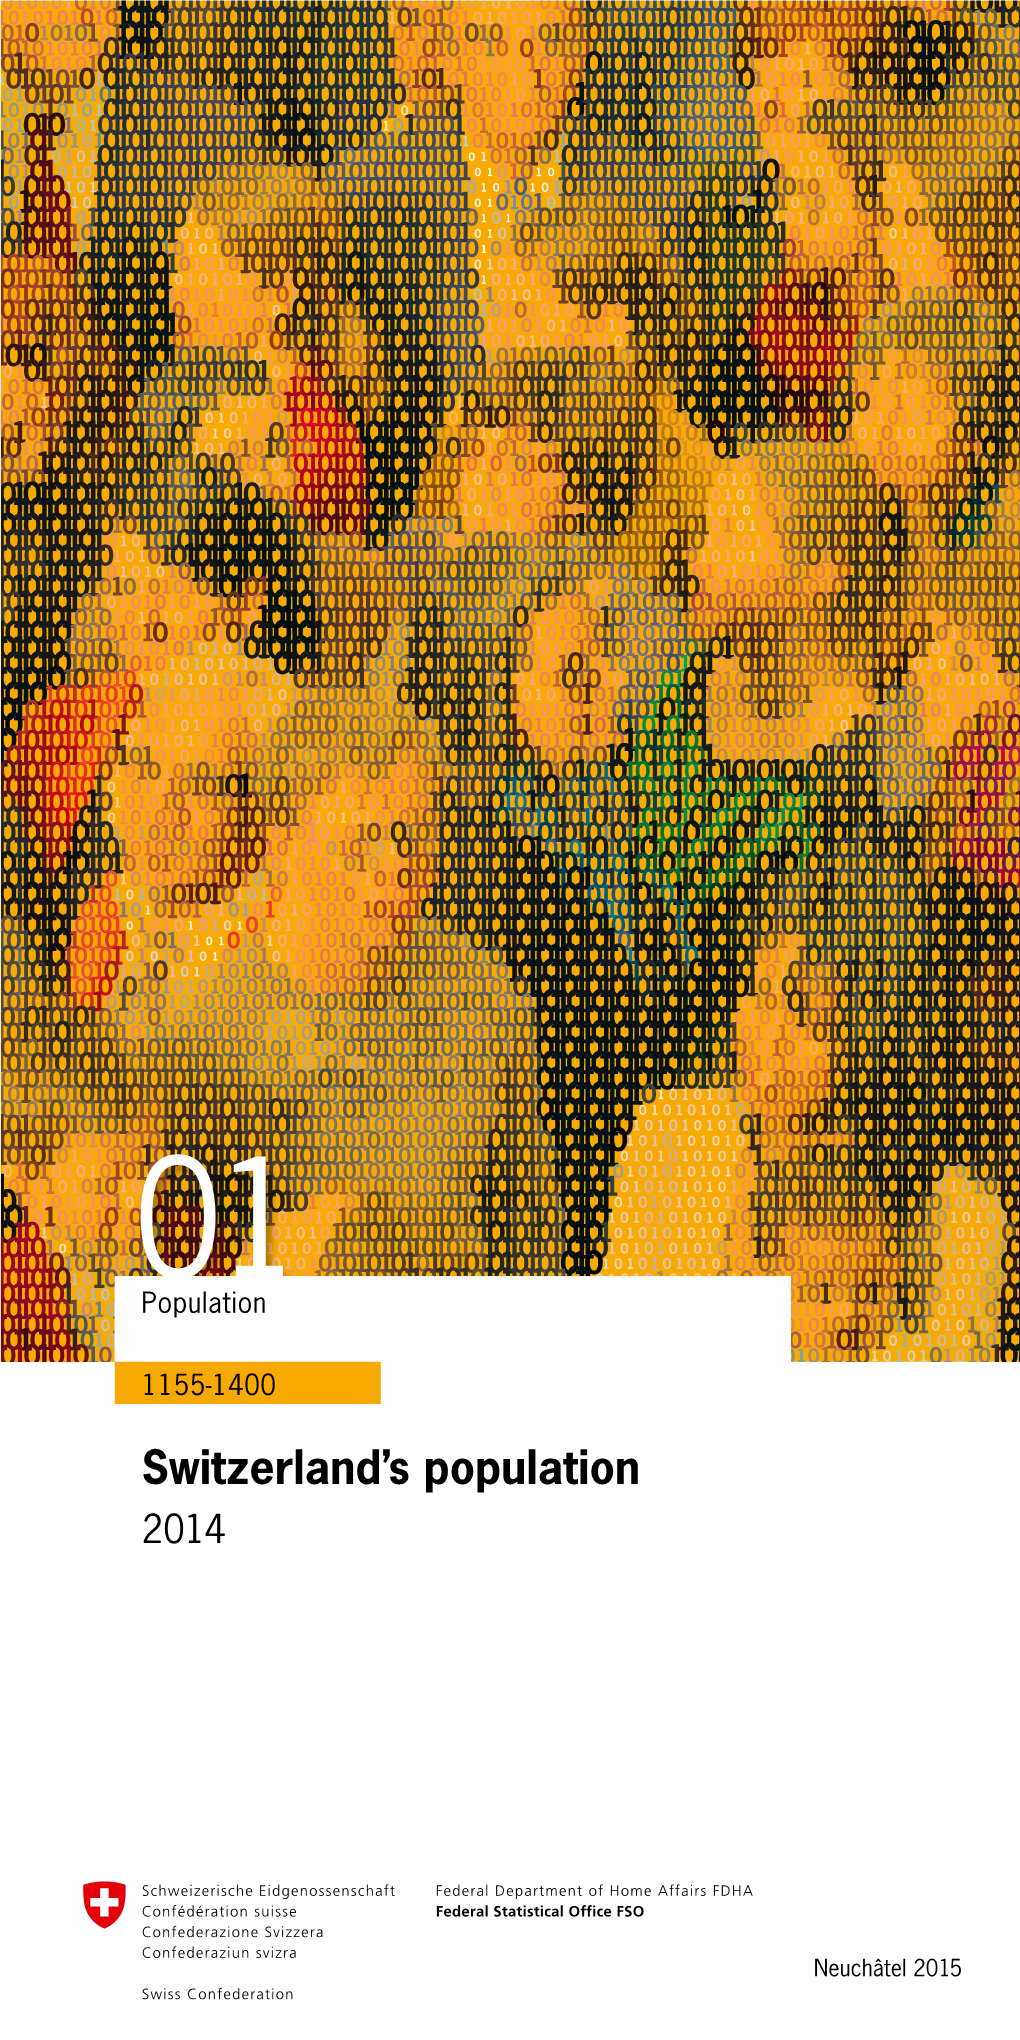 Switzerland's Population